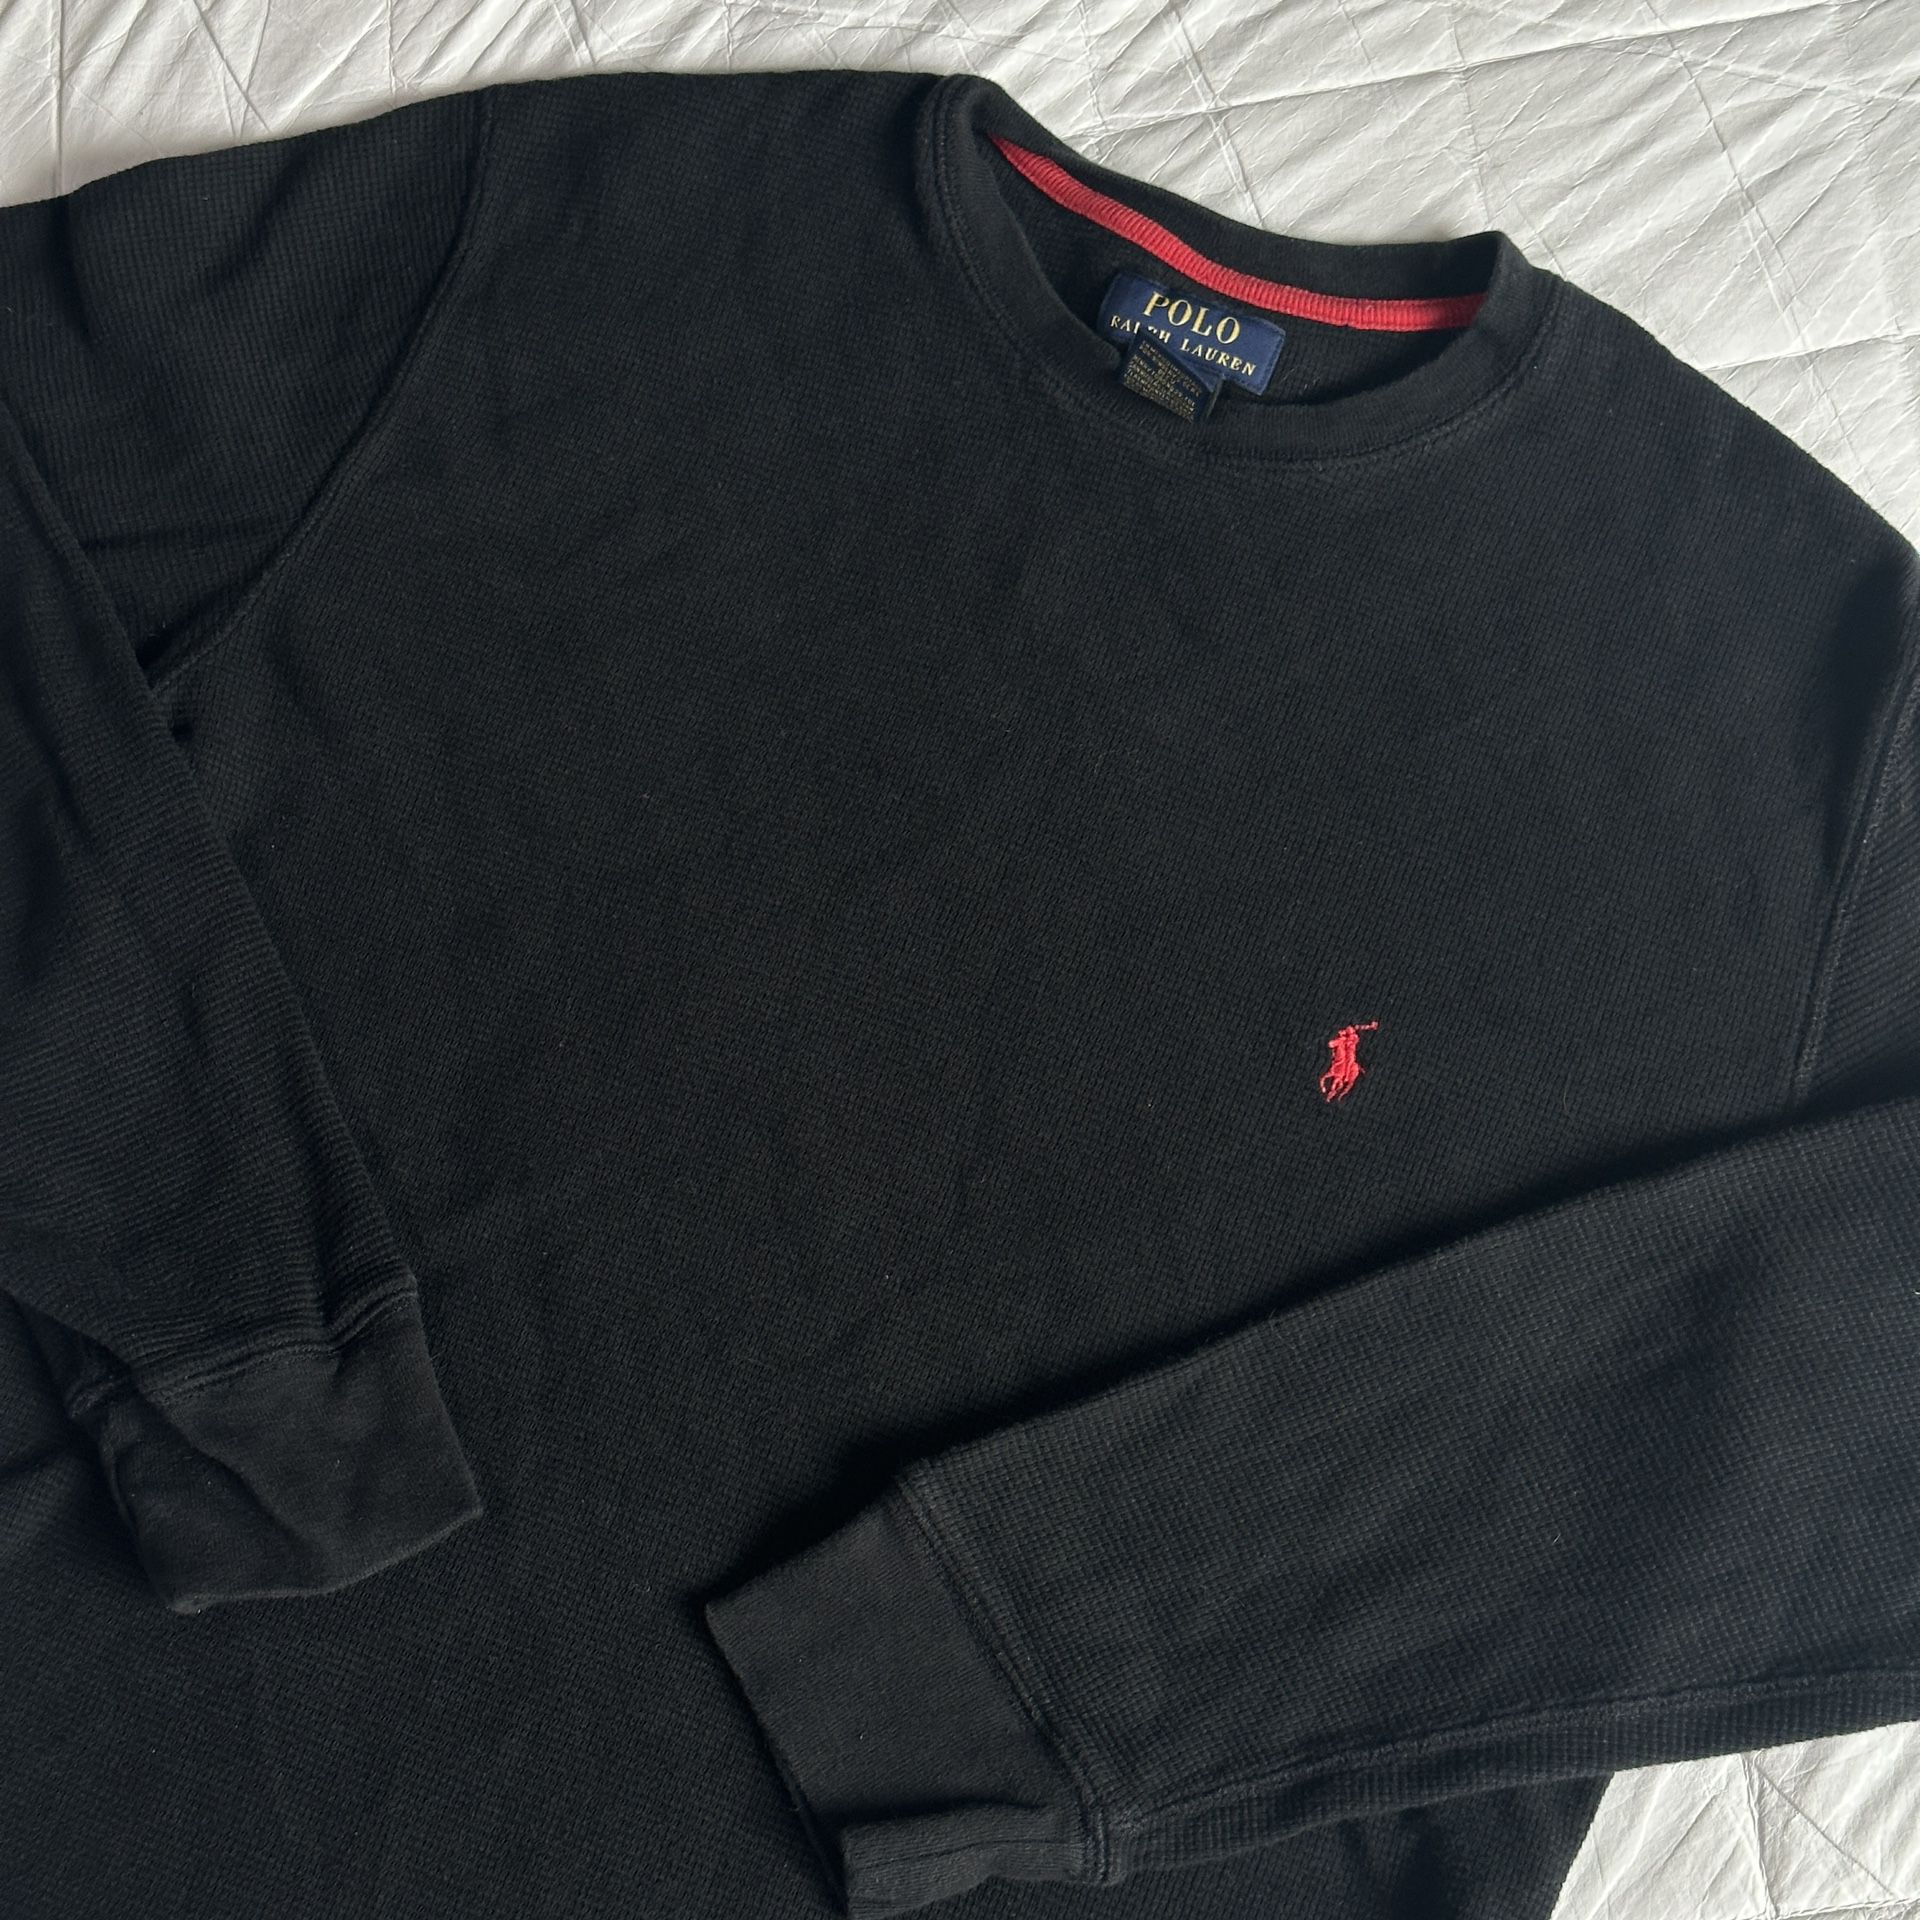 Shirt Ralph Lauren Long Sleeve black red logo size L